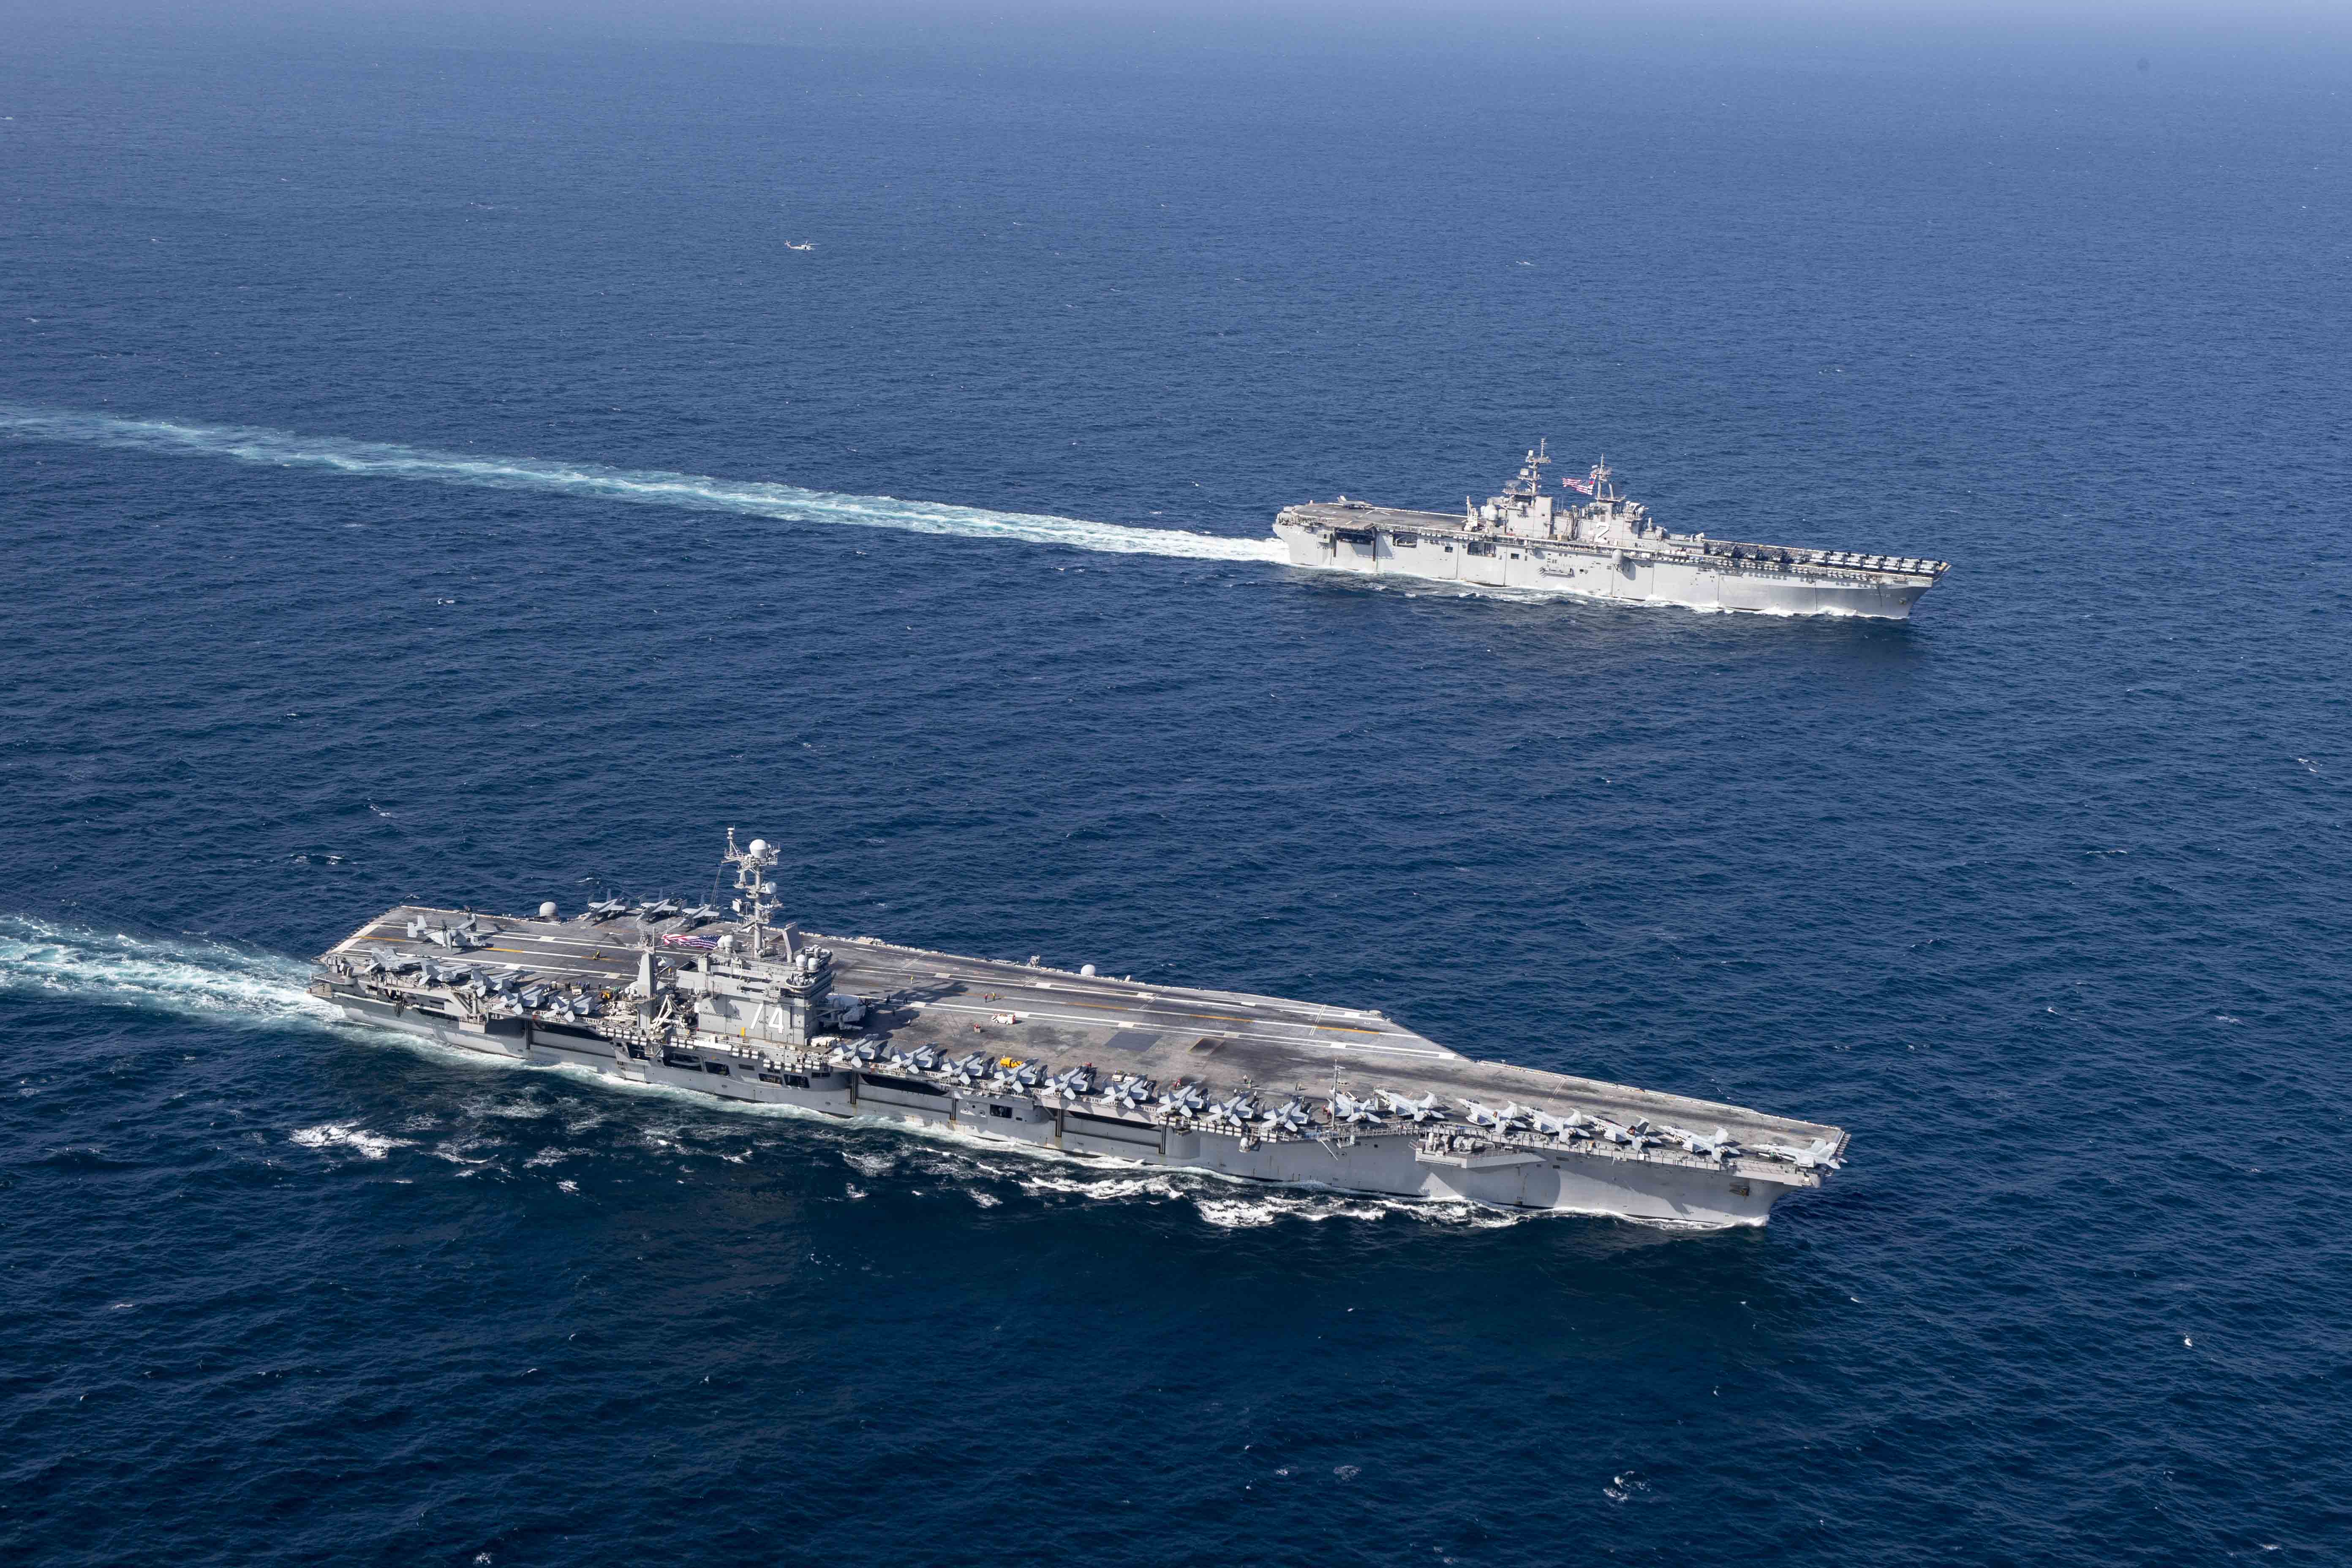 Авианосец USS John C. Stennis (CVN 74) и универсальный десантный корабль USS Essex (LHD 2) интегрировались в Персидском заливе для проведения совместных операций, фото сделано 14 декабря 2018 года